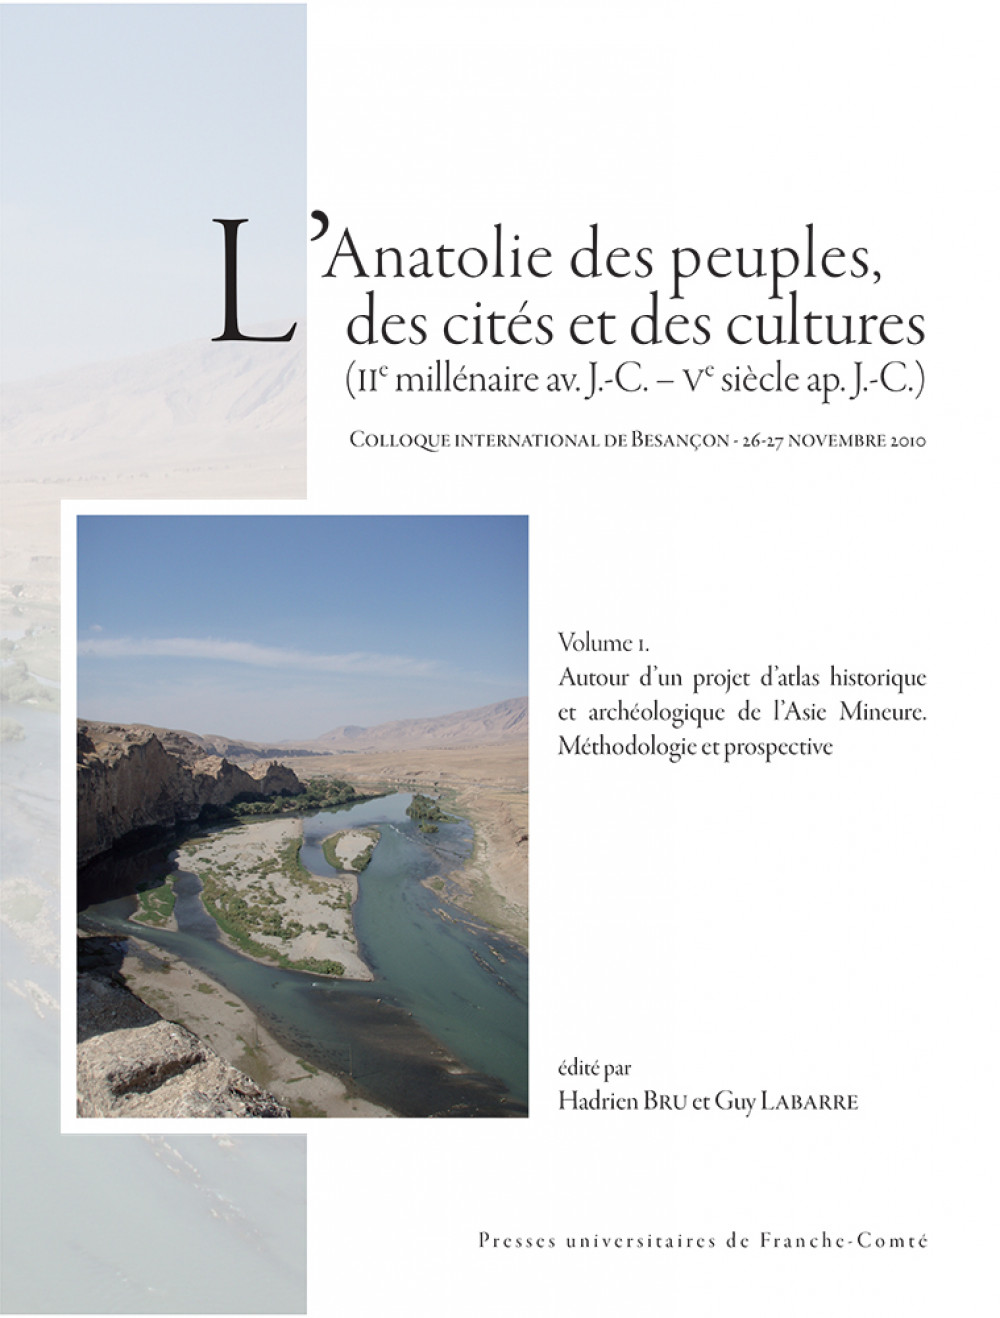 L’Anatolie des peuples, des cités et des cultures  (IIe millénaire av. J.-C. – Ve siècle ap. J.-C.)